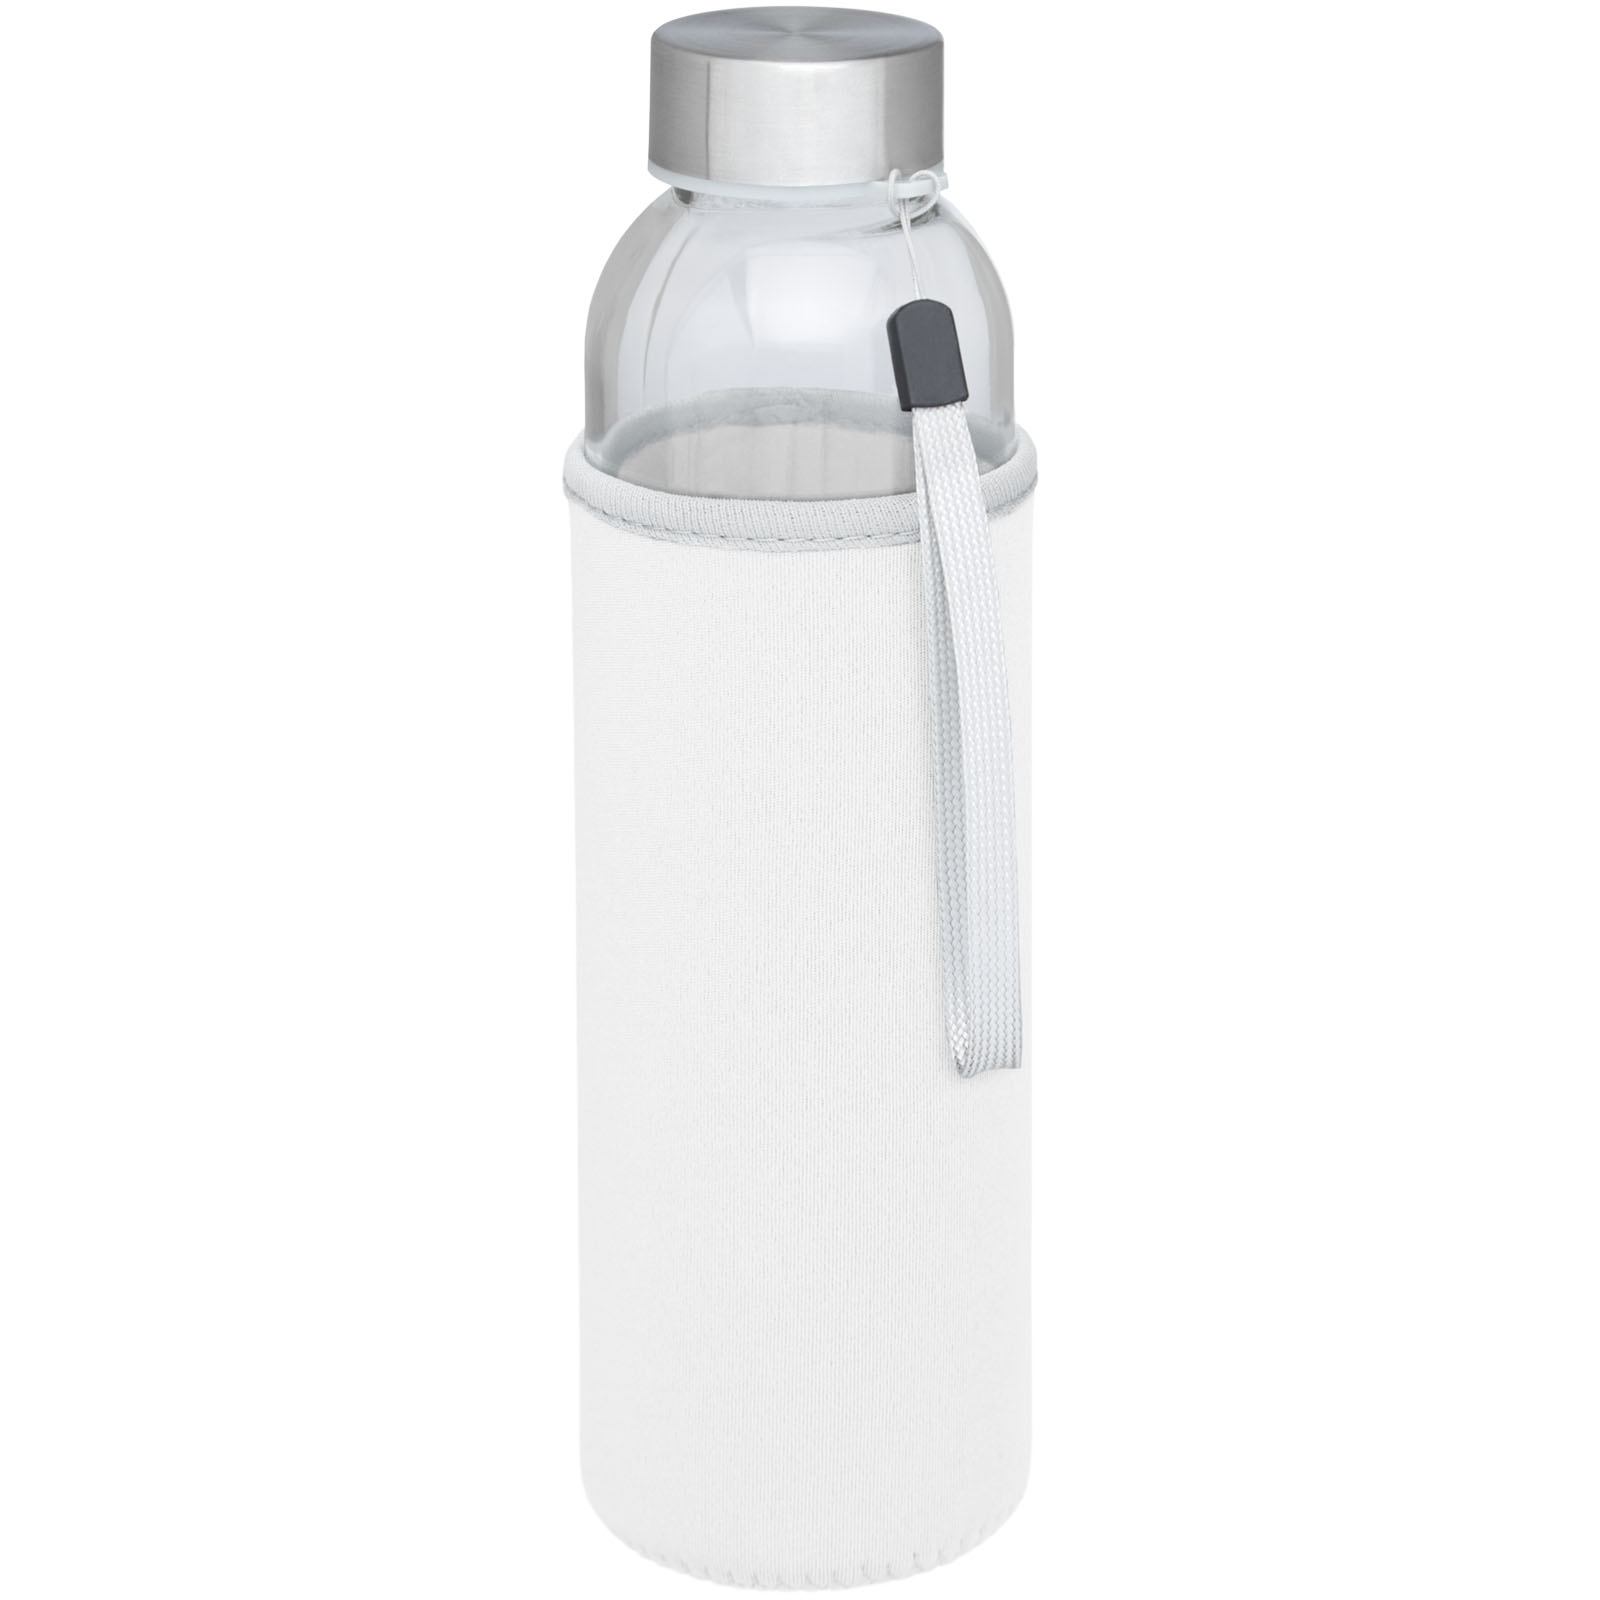 Water bottles - Bodhi 500 ml glass water bottle